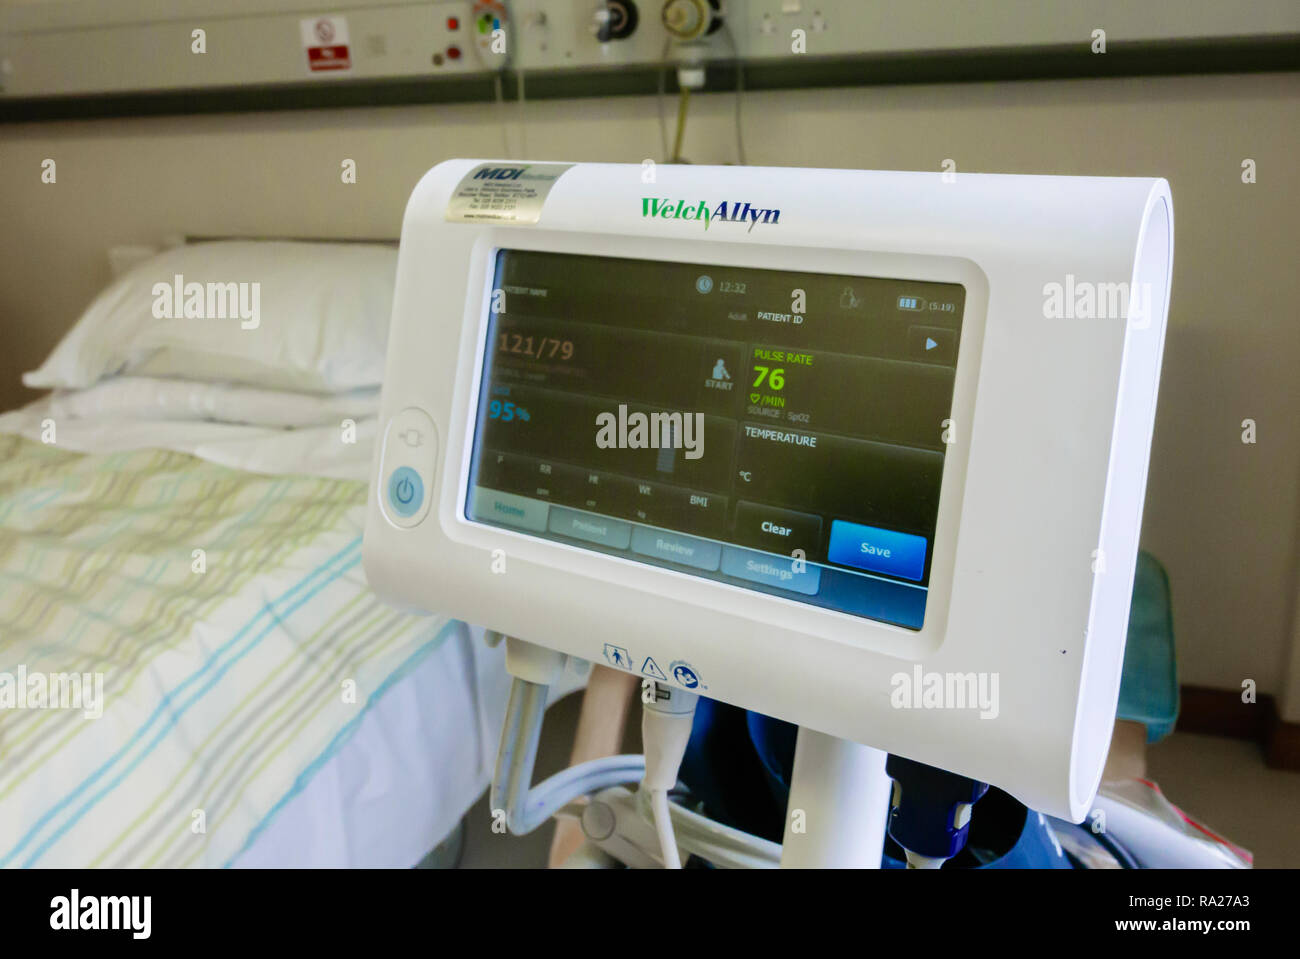 Monitor de presión arterial WelchAllyn en un hospital mostrando una presión sanguínea normal de 121/79 y un nivel de saturación de la sangre del 95%. Foto de stock